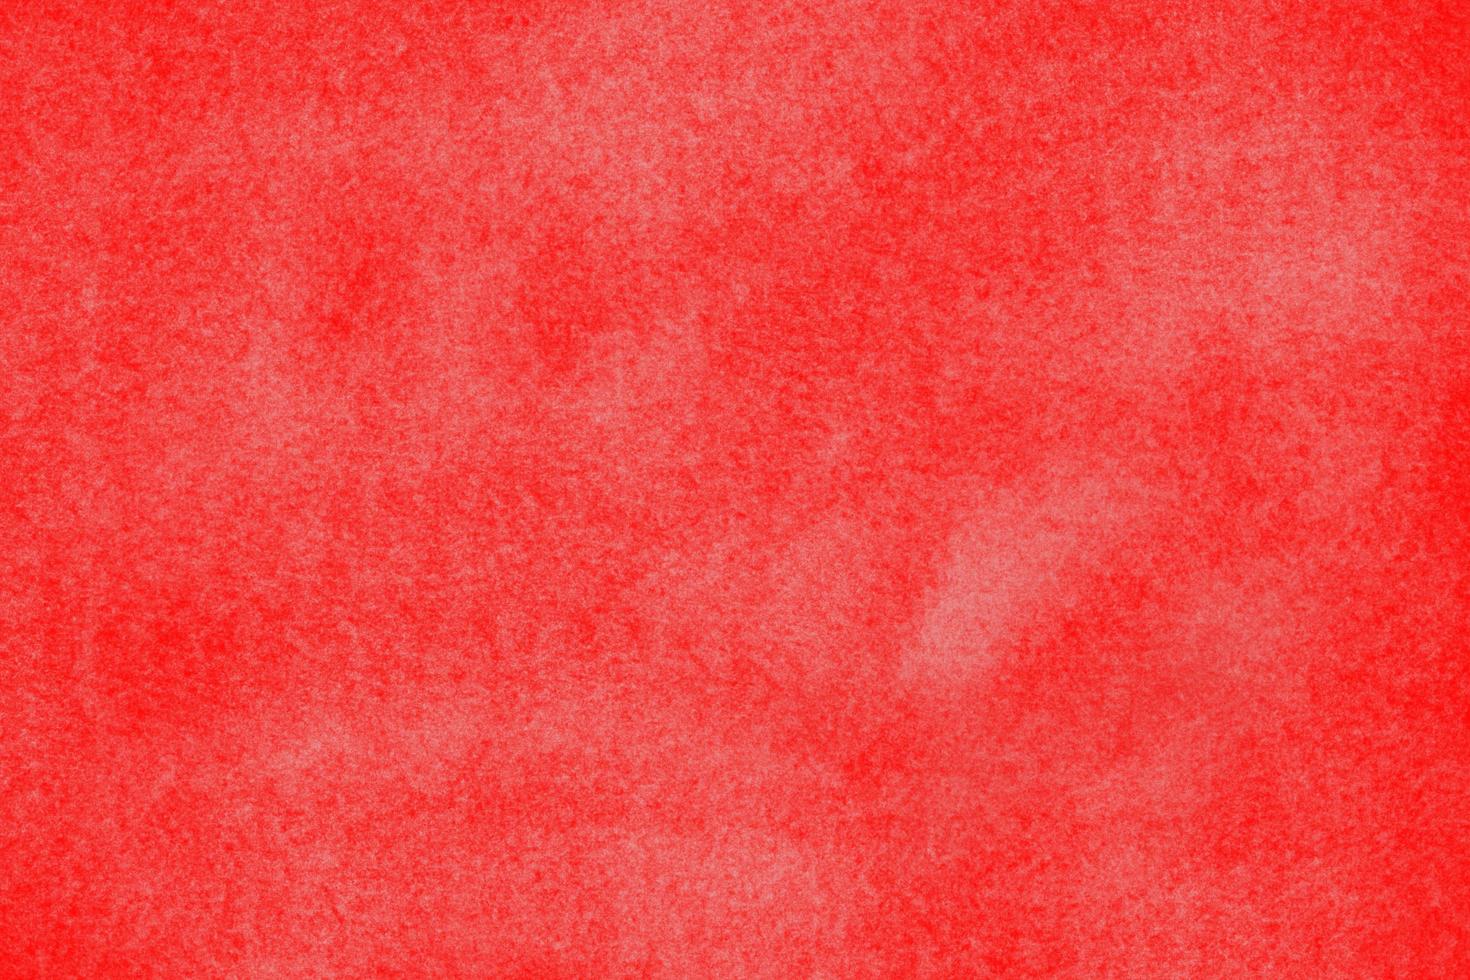 gestempelte weiße graue Farbe auf rotem Hintergrund durch Programmcomputer, abstrakte Kunst raue Beschaffenheitsgrafik. zeitgenössische kunst, monotone künstlerische papierleinwand, platz für rahmenkopie postkarte schreiben foto